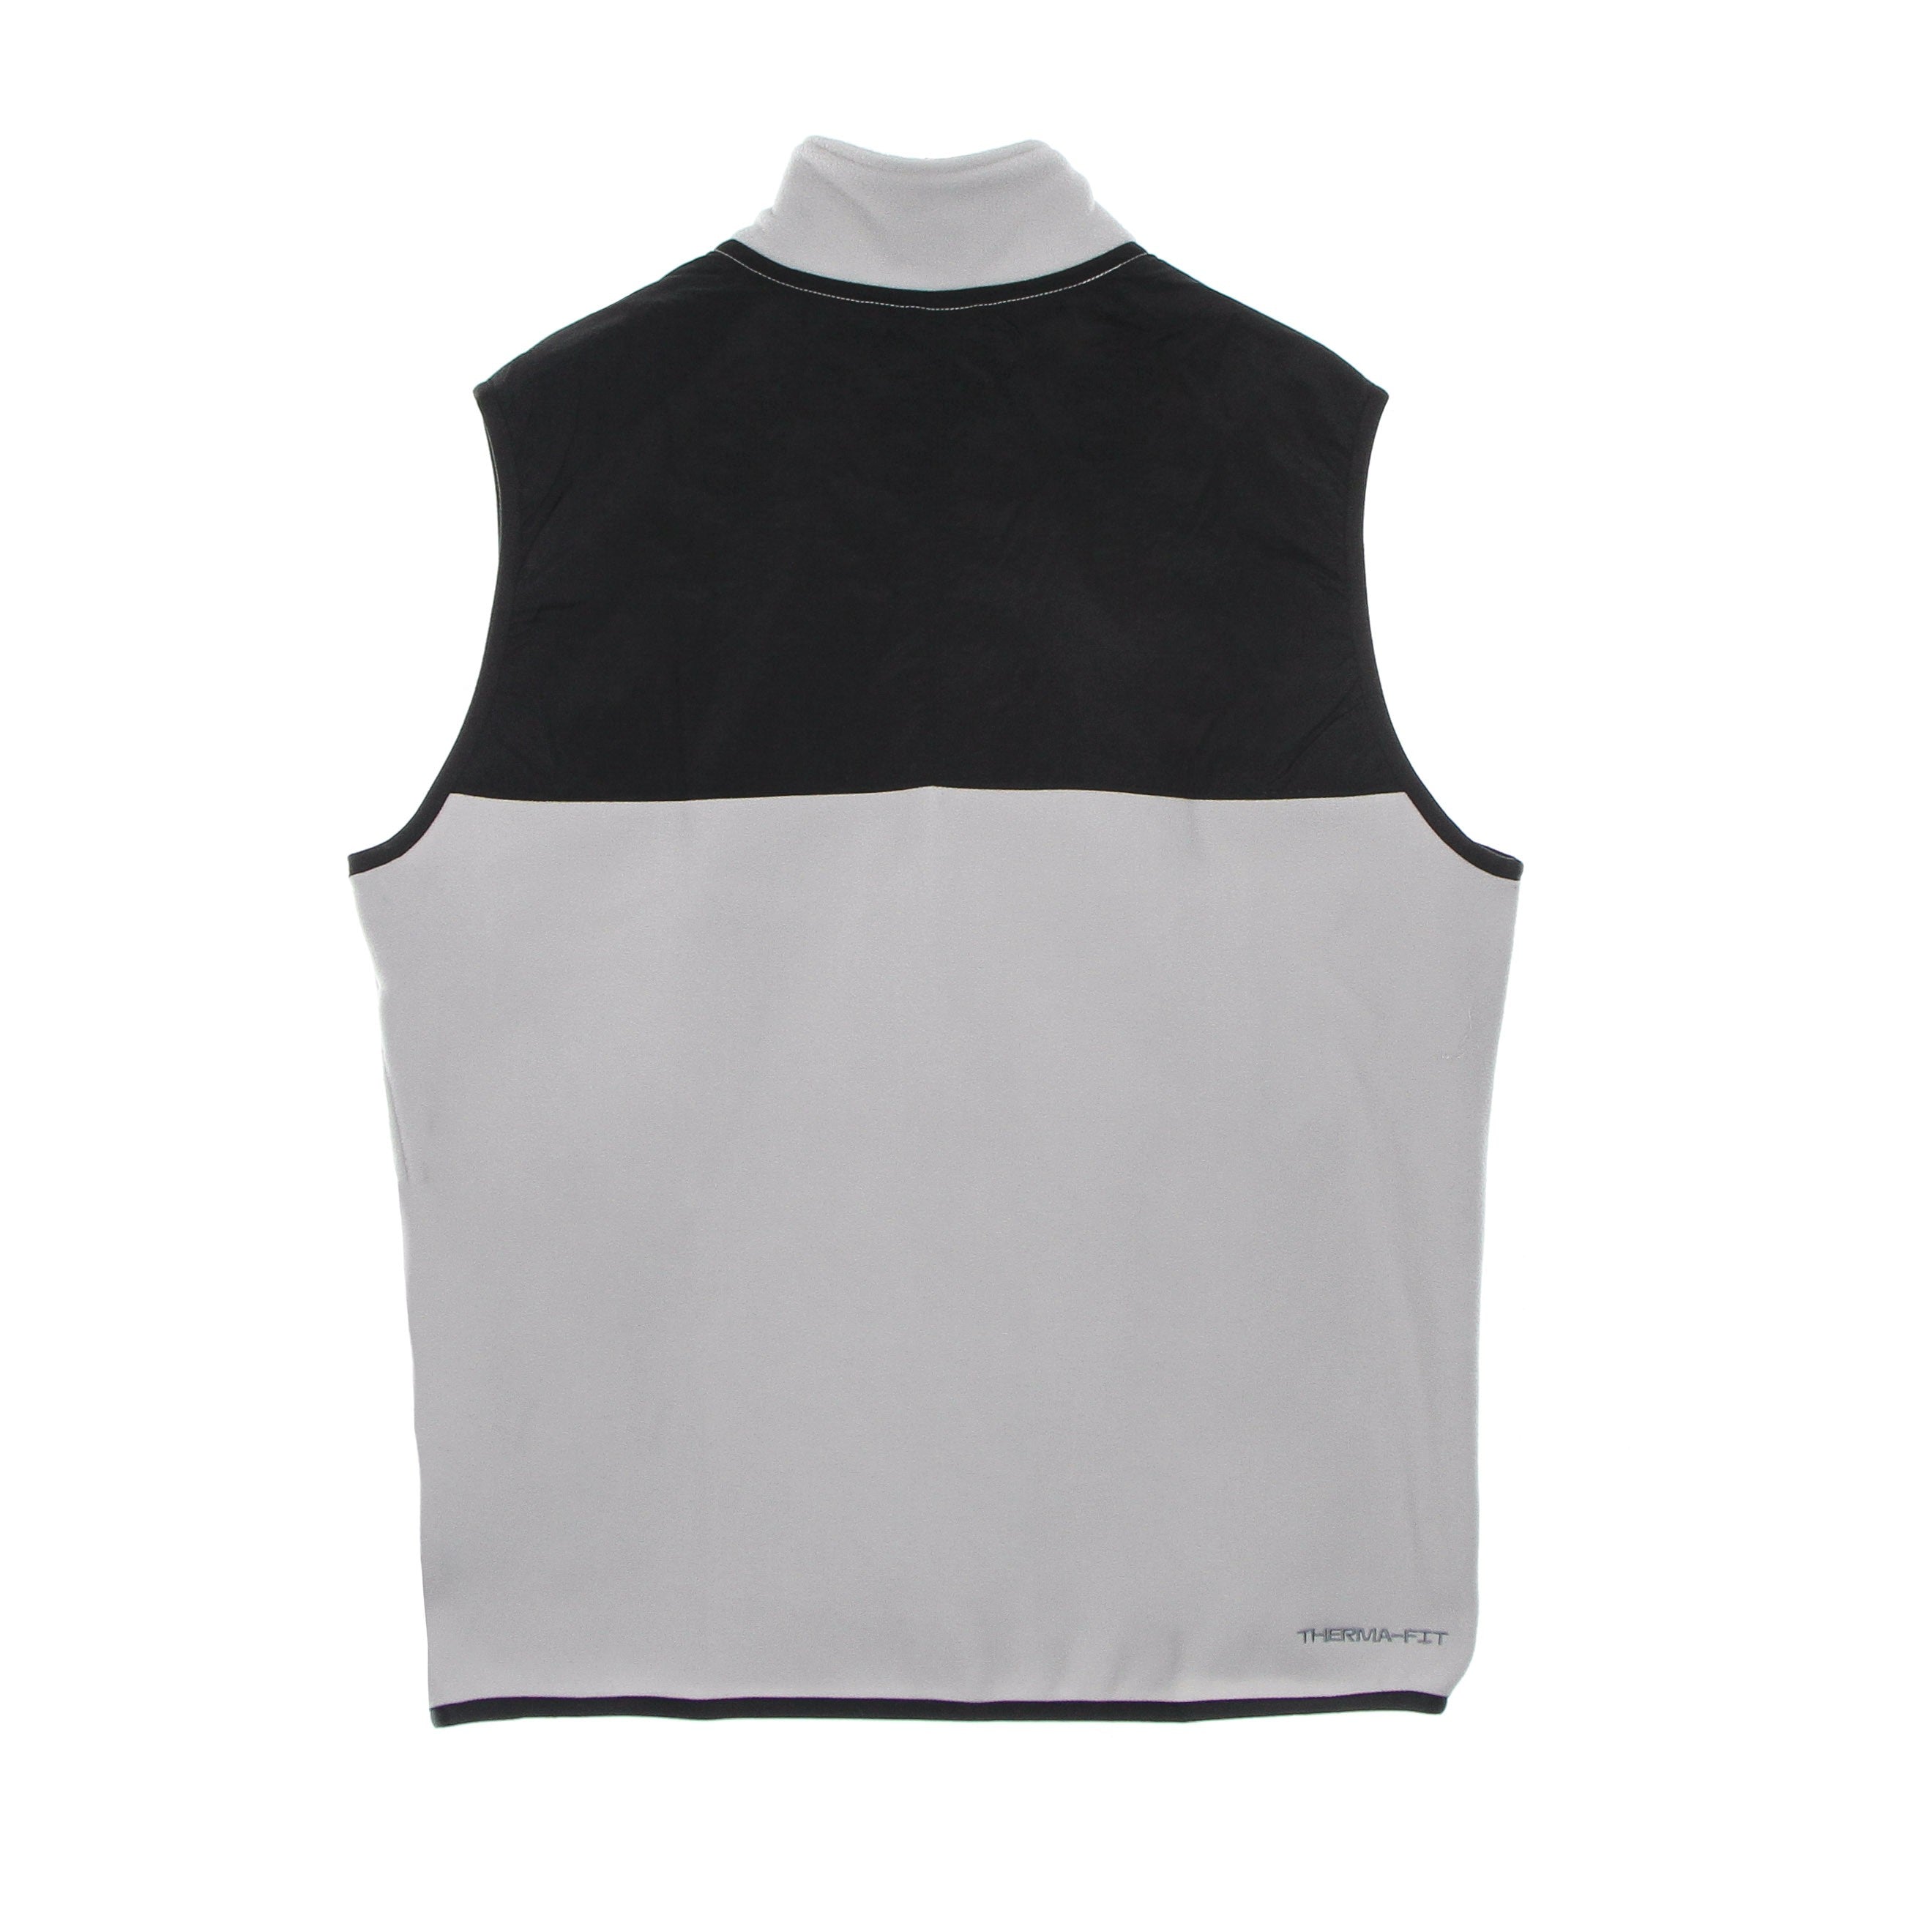 Men's Sportswear Spu Therma-fit Polar Fleece Vest Lt Iron Ore/black/black